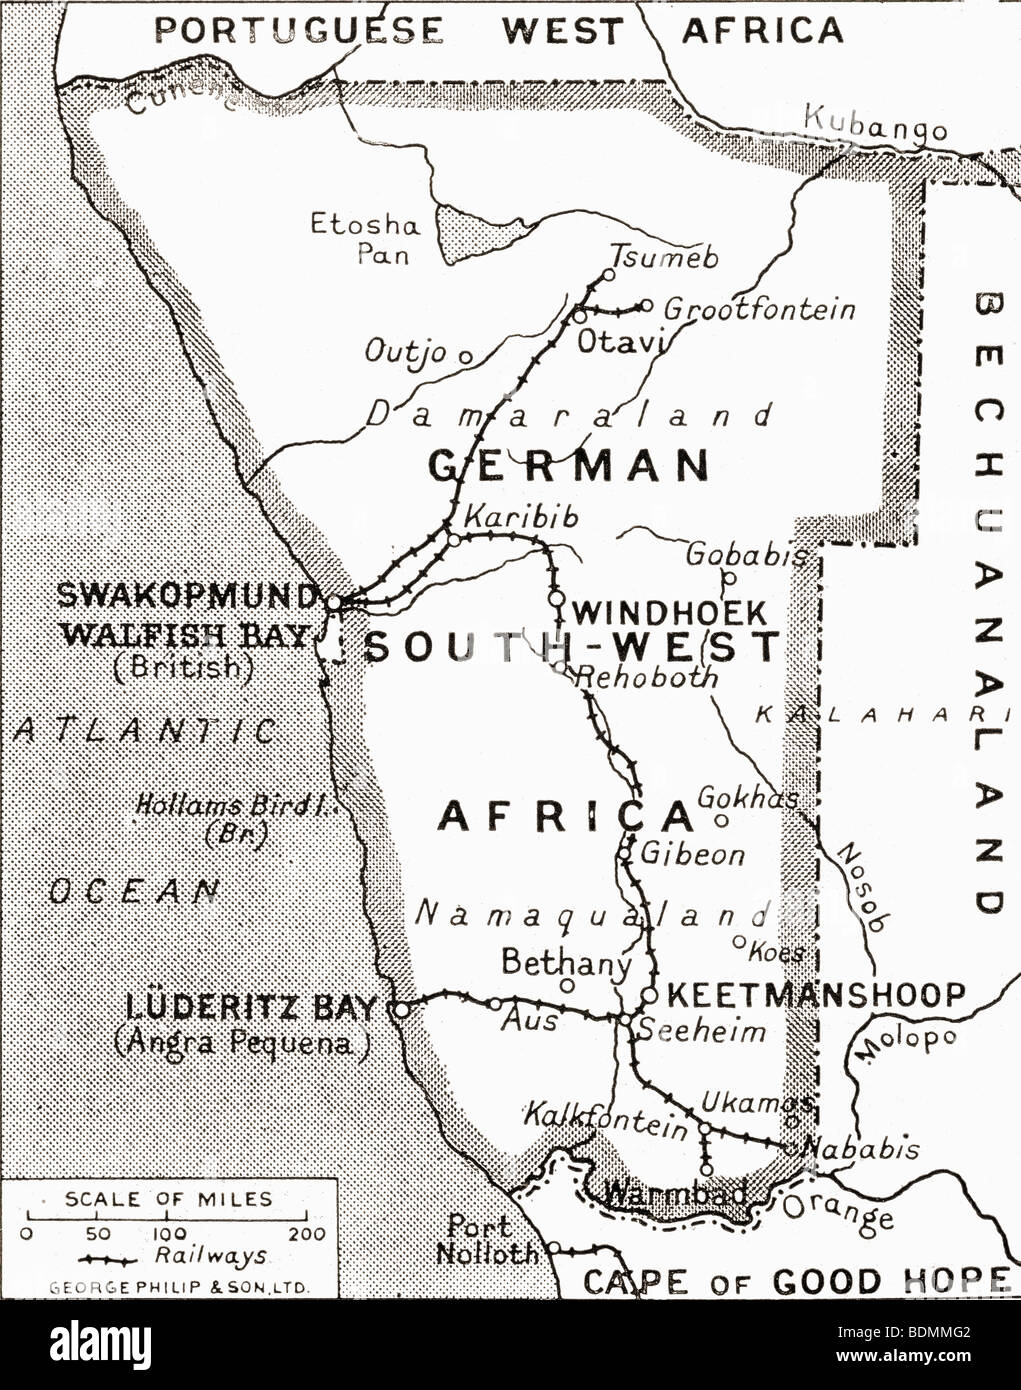 Mapa de África Sudoccidental alemana, escenario de una de las campañas de Gran Bretaña, mostrando Walfish Bay y Keetmanshoop. Foto de stock